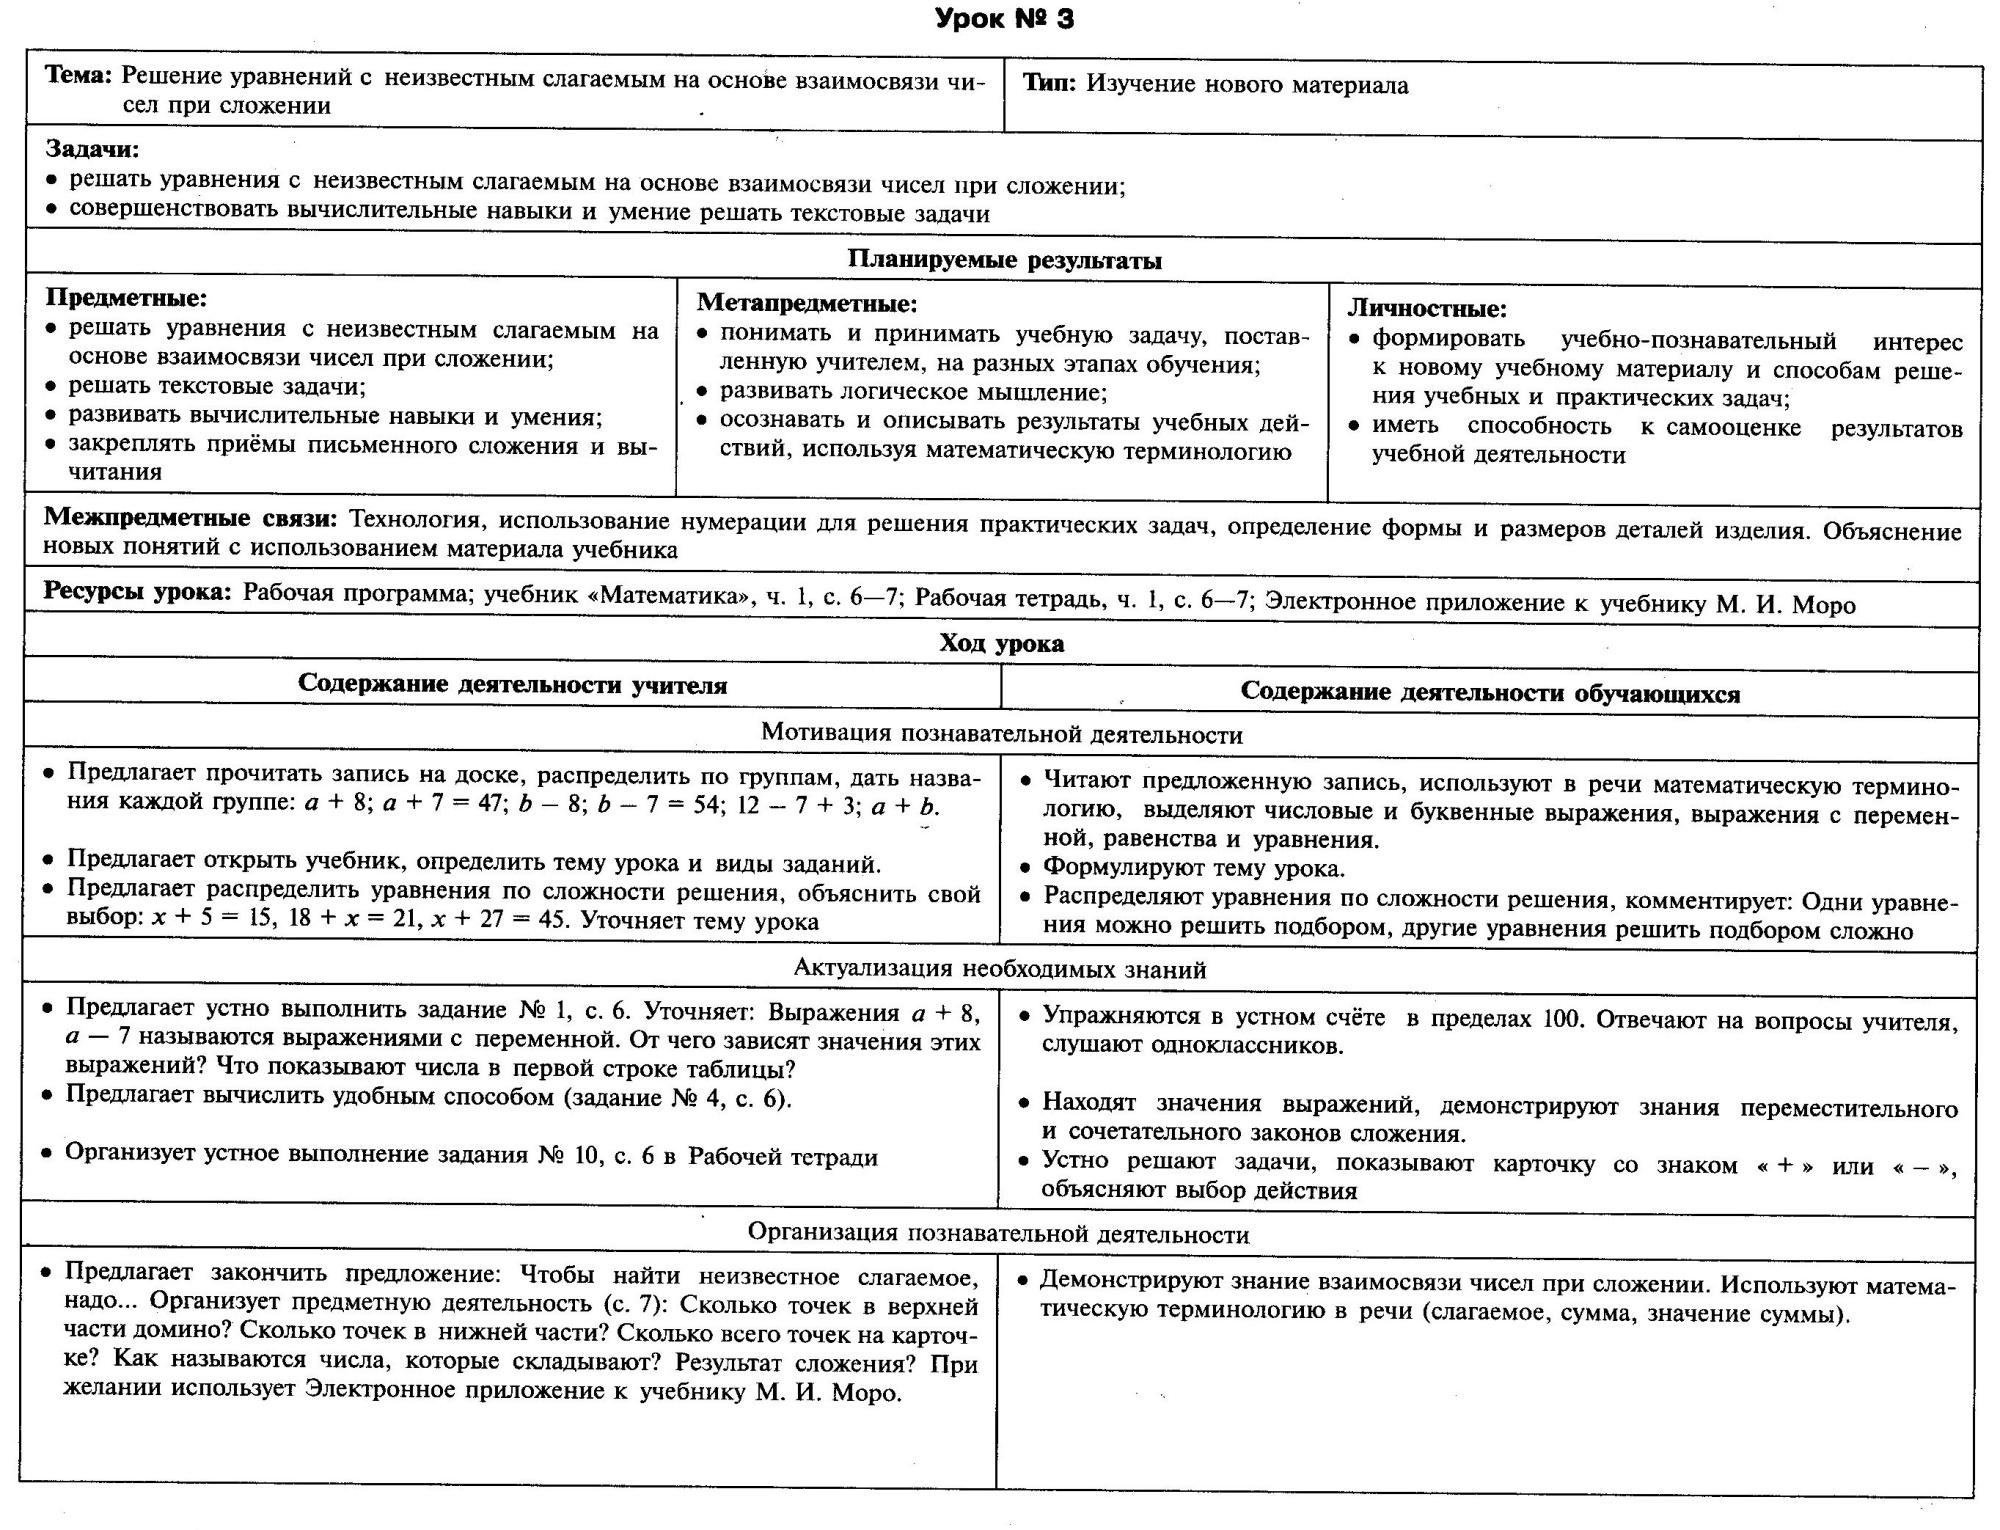 Технологические карты уроков математики в 3 классе (УМК Школа России)